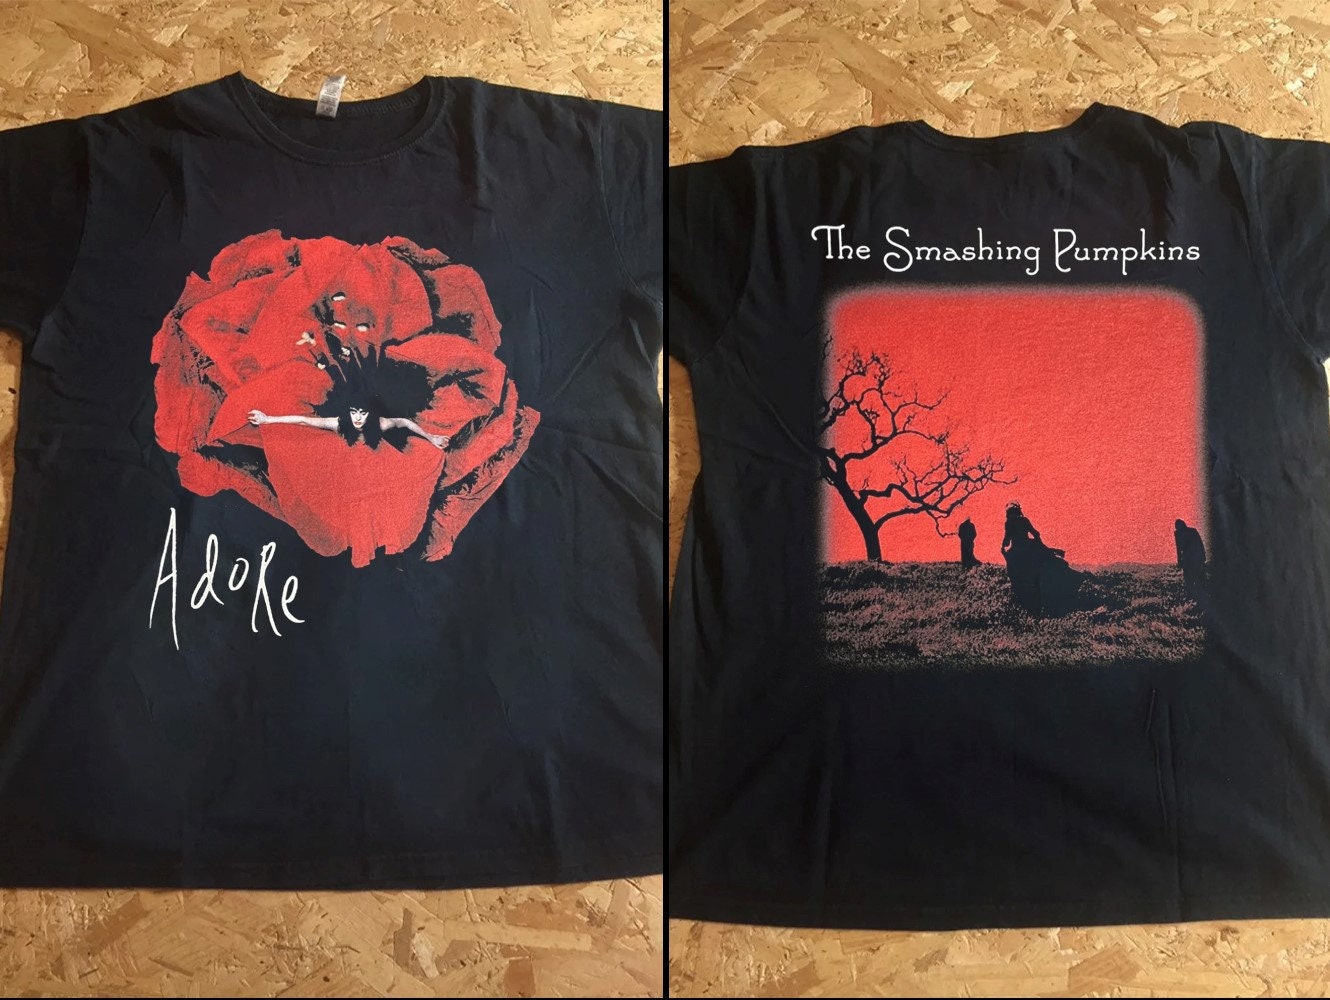 Discover 1998 The Smashing Pumpkins Adore Billy Corgan Grunge T-Shirt, Adore Billy Corgan The Smashing Pumpkins Shirt